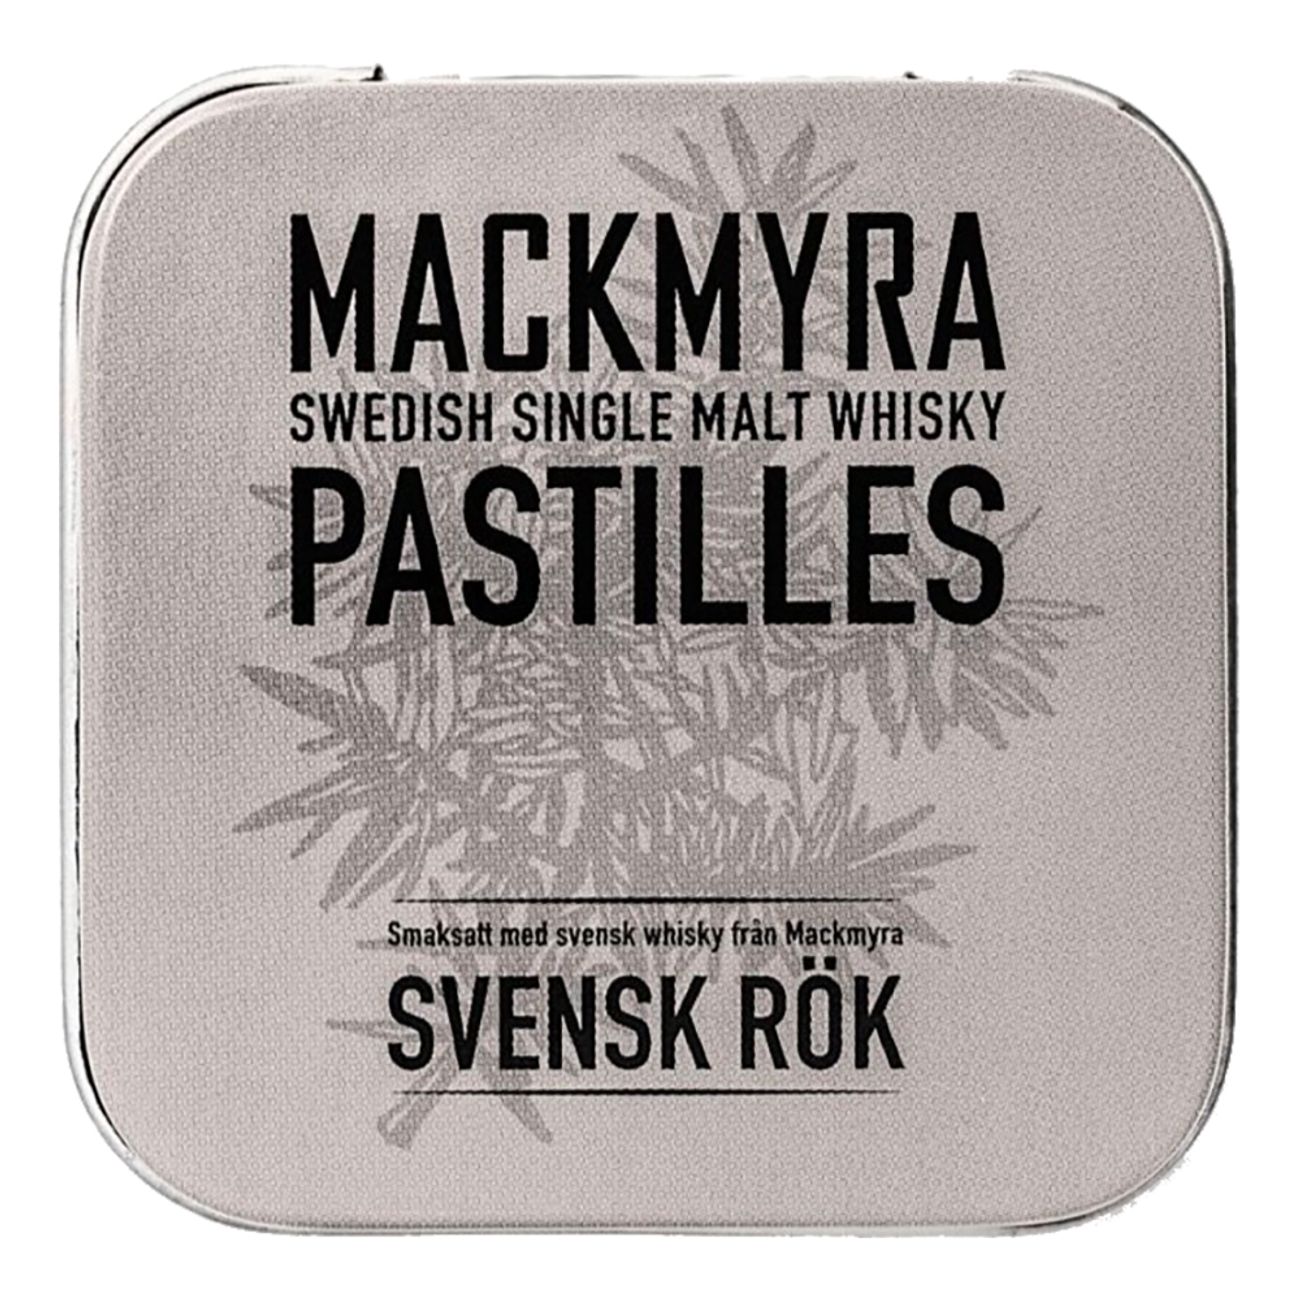 mackmyra-pastiller-svensk-rok-82027-1